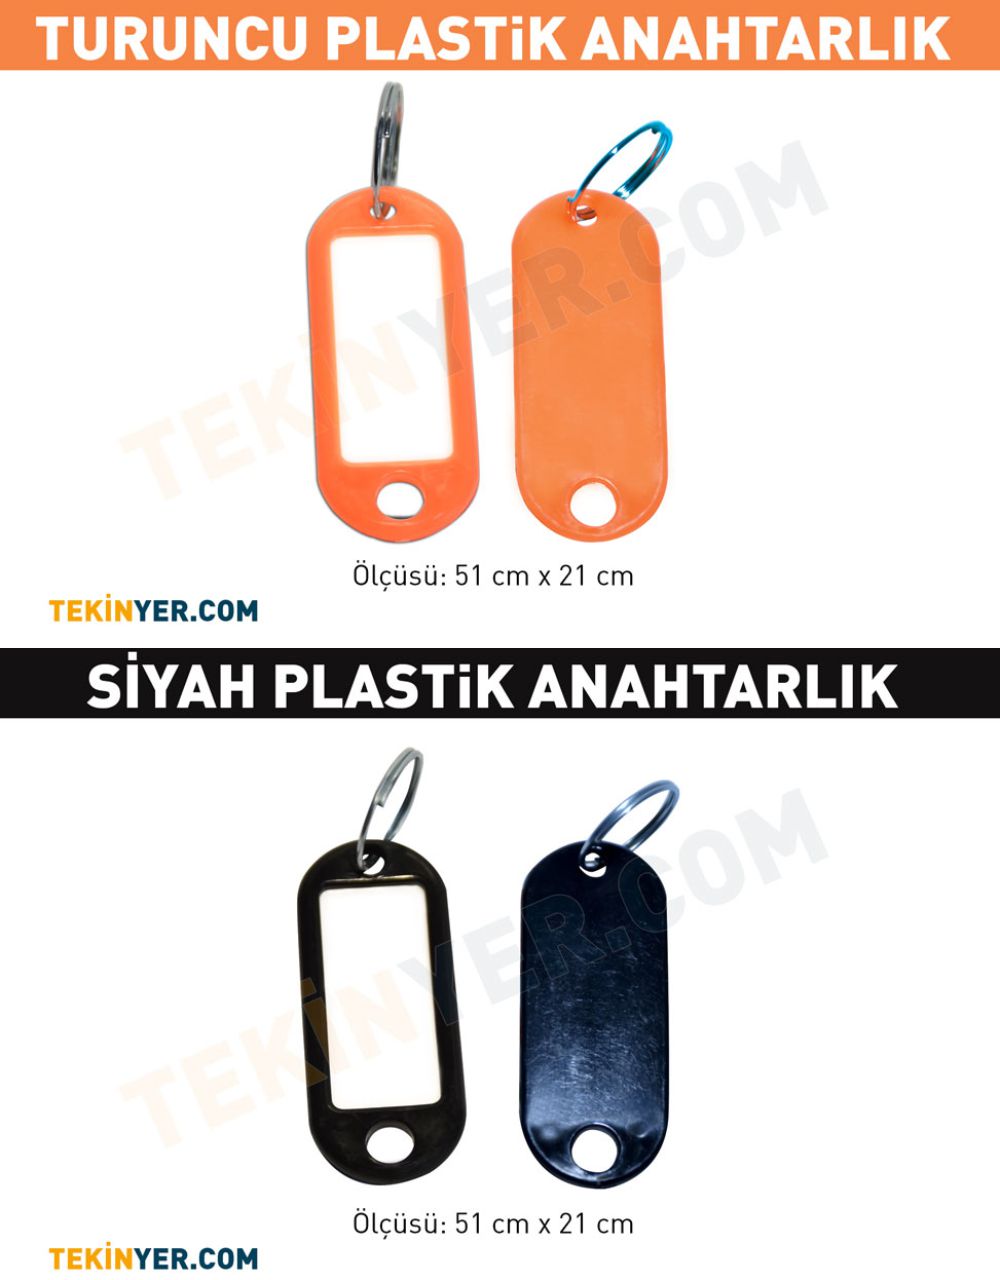 Adana Plastik Anahtarlık Nasıl ölçü alınır